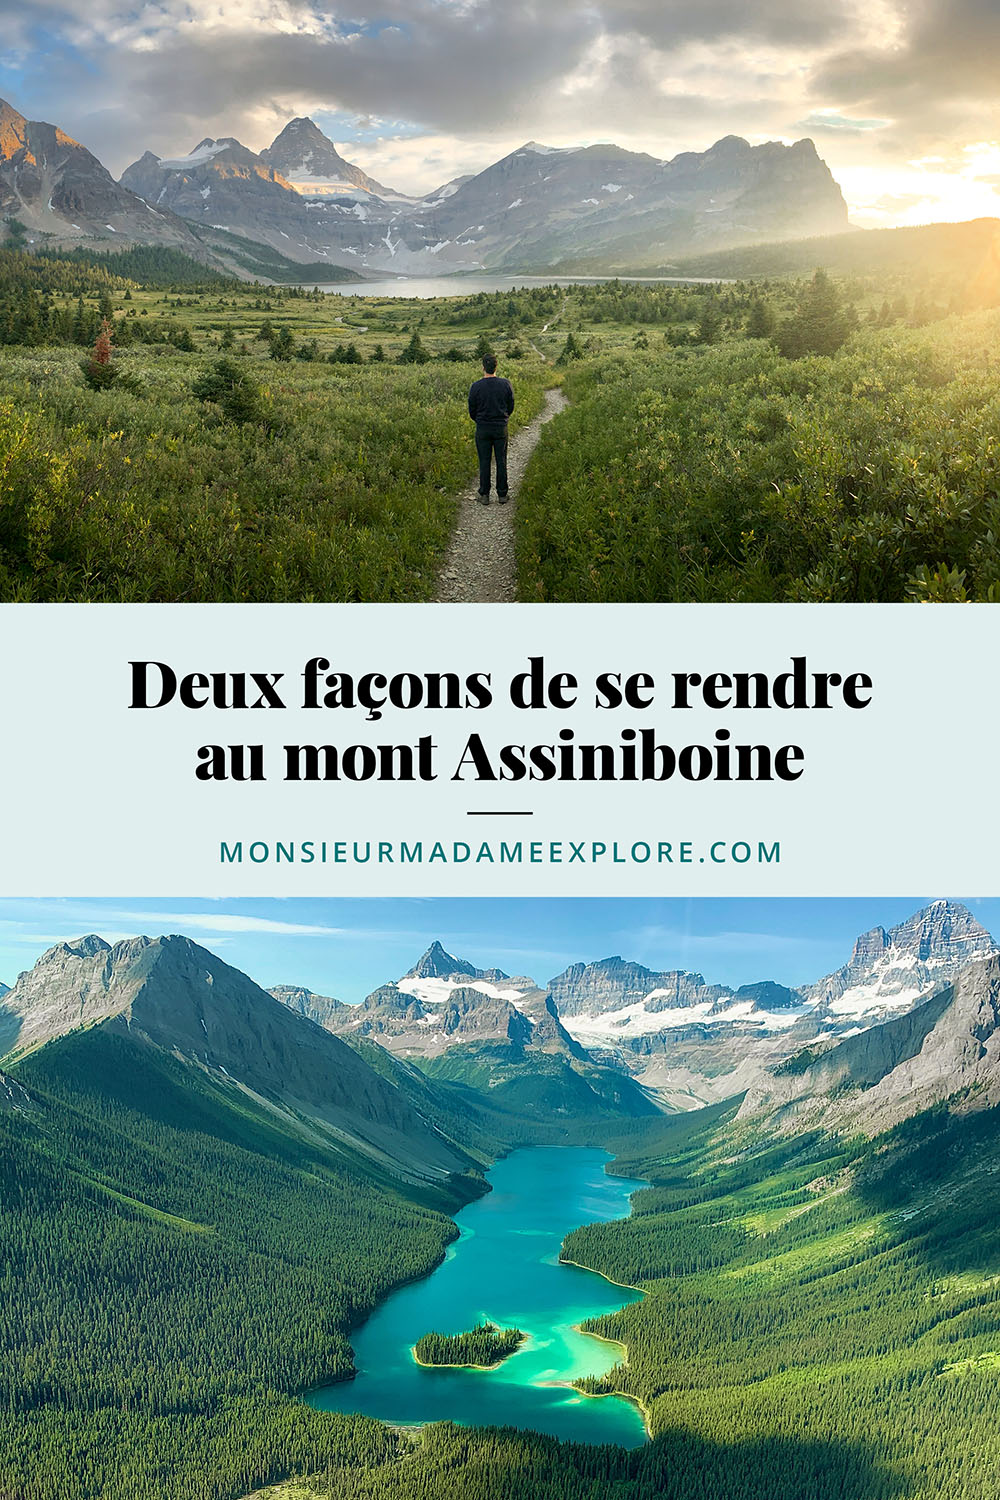 Les deux façons de se rendre au mont Assiniboine, Monsieur+Madame Explore, Blogue de voyage, Rocheuses canadiennes, Colombie-Britannique, Canada / How to go to Mount Assiniboine, Canadian Rockies, BC, Canada